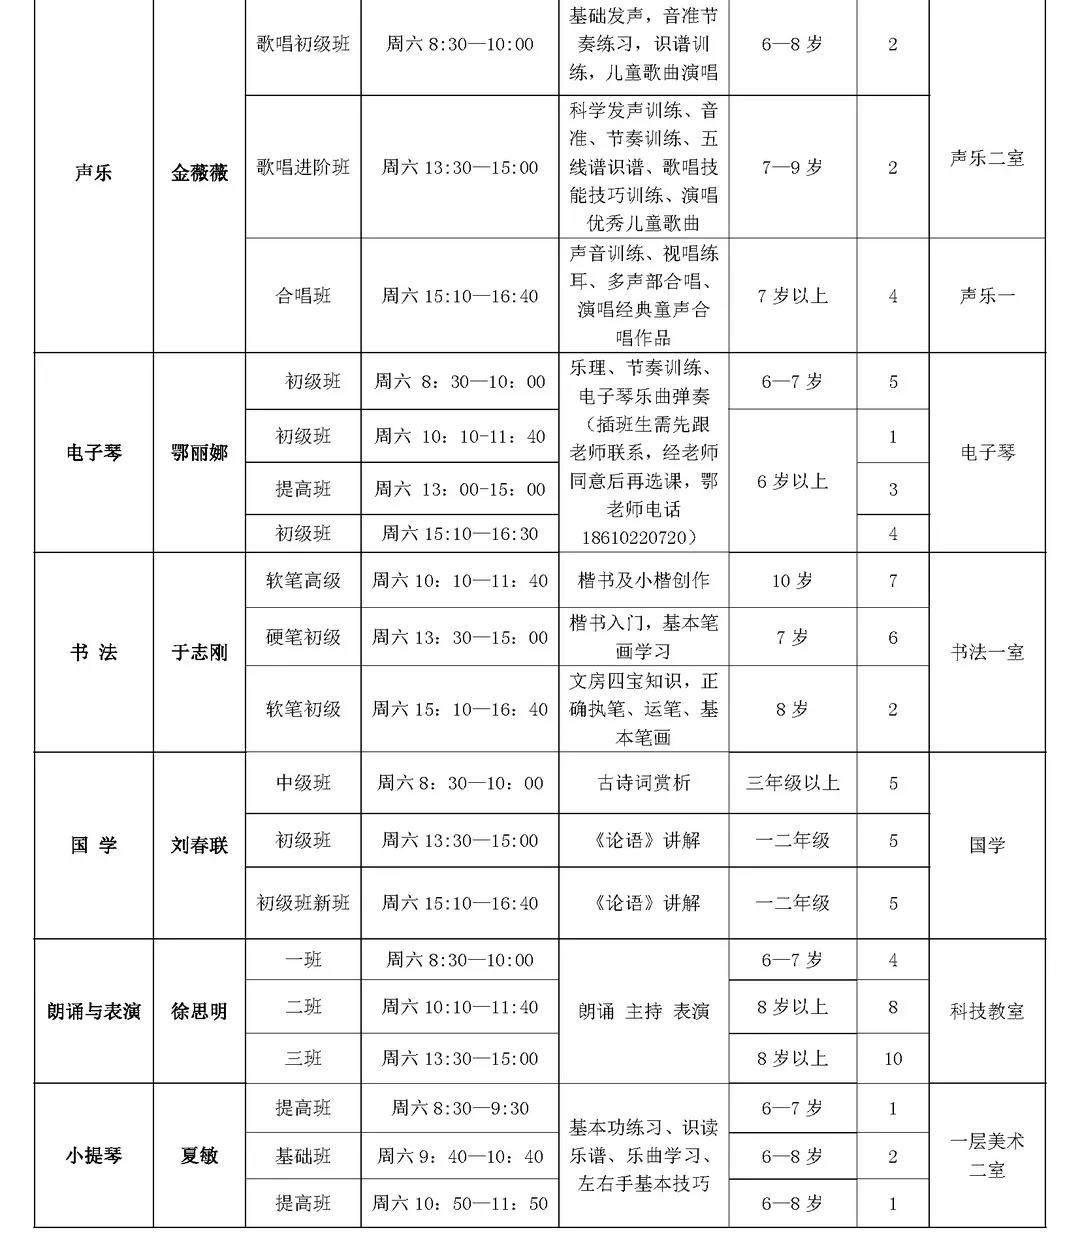 西城德胜少年宫2019年秋季插班生课程表2